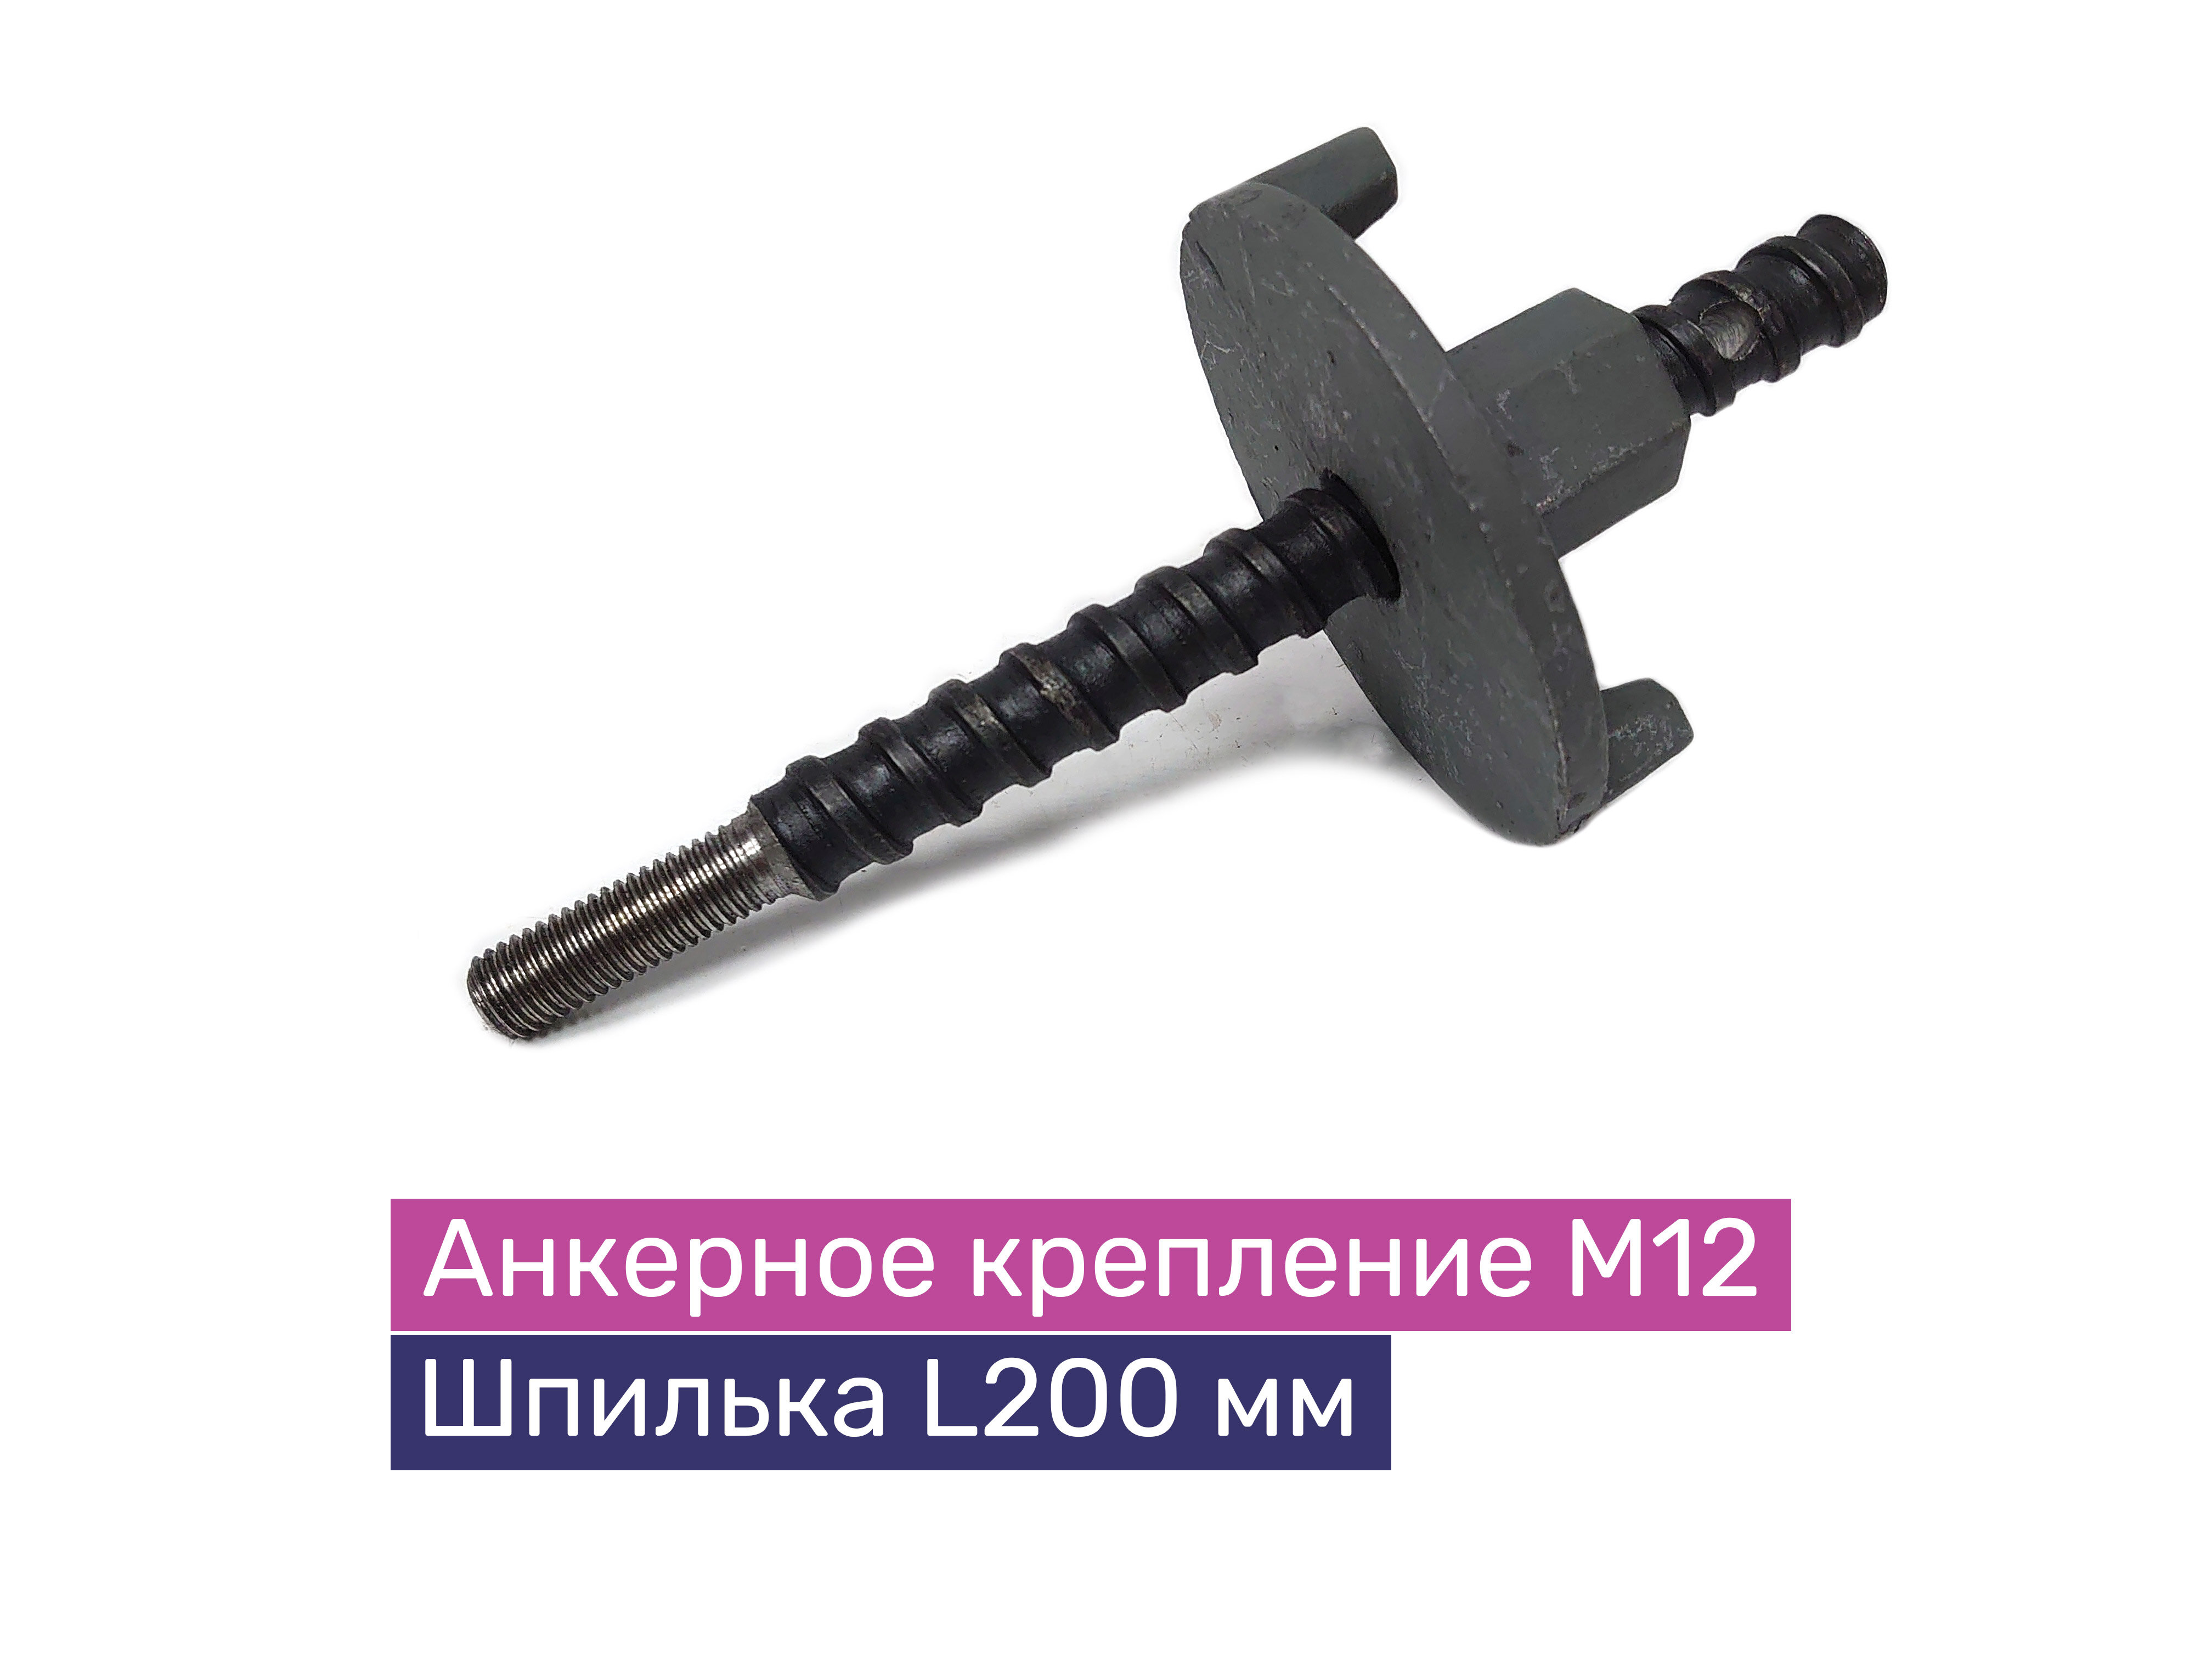 Анкерное крепление установки алмазного бурения М12 (шпилька L200 мм), Exla